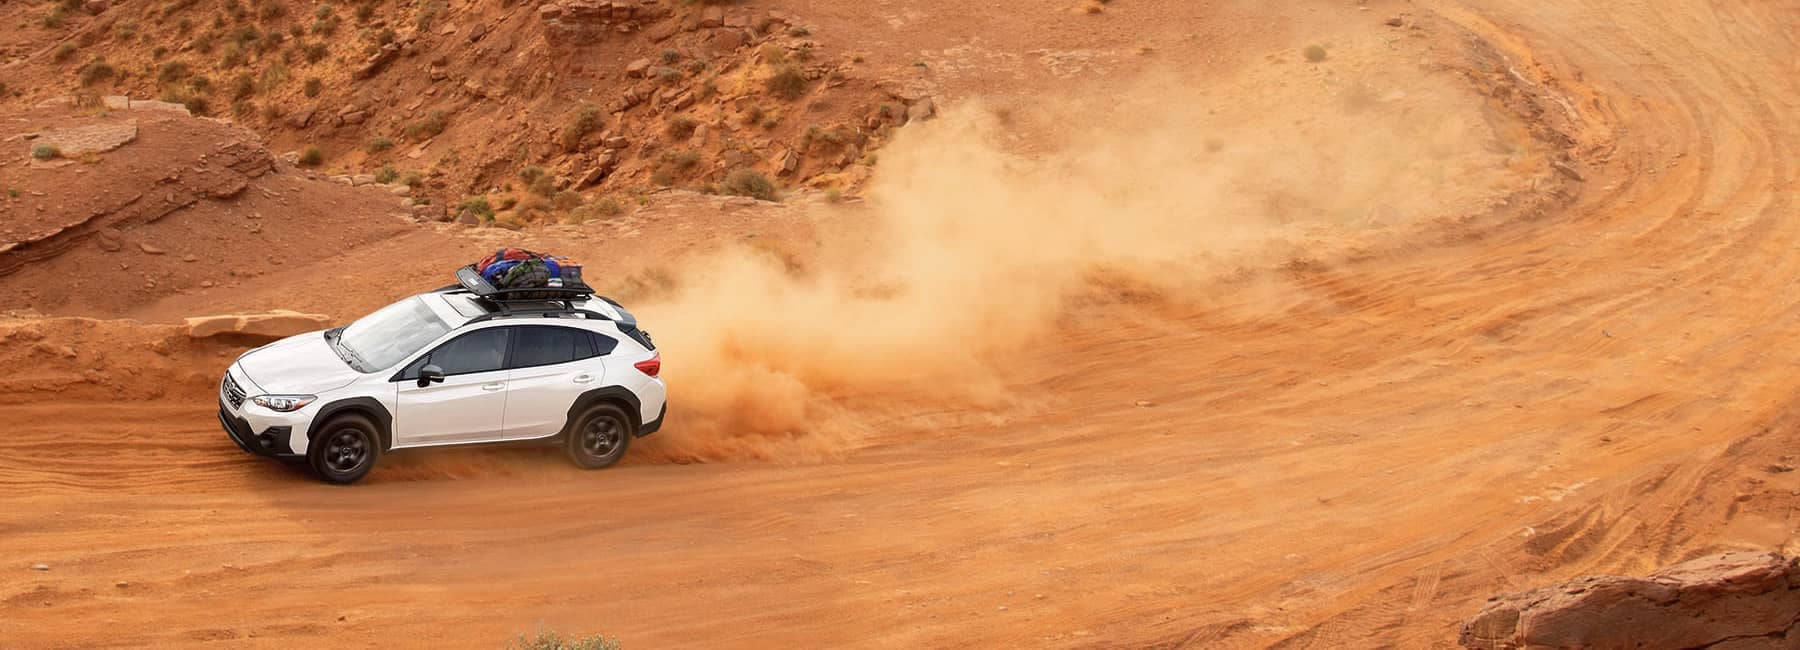 2022 Subaru Crosstrek speeding on a dusty desert road